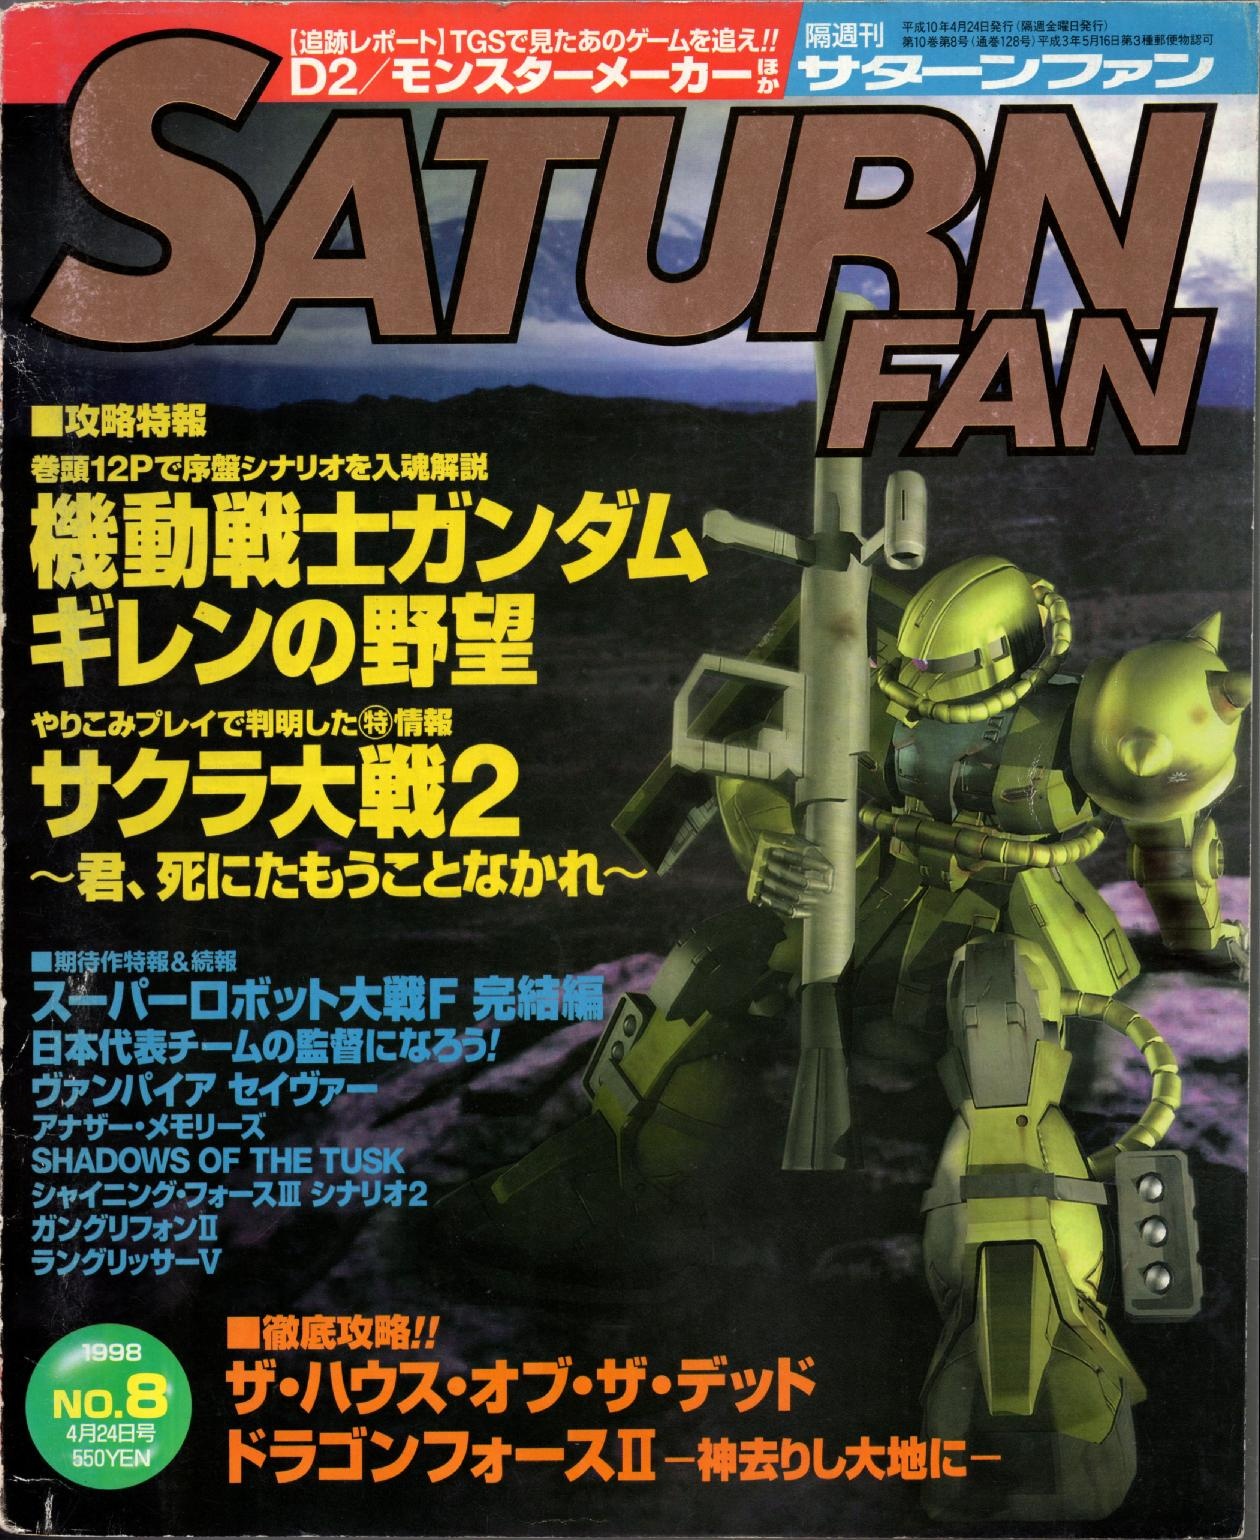 SaturnFan JP 1998-08 19980424.pdf